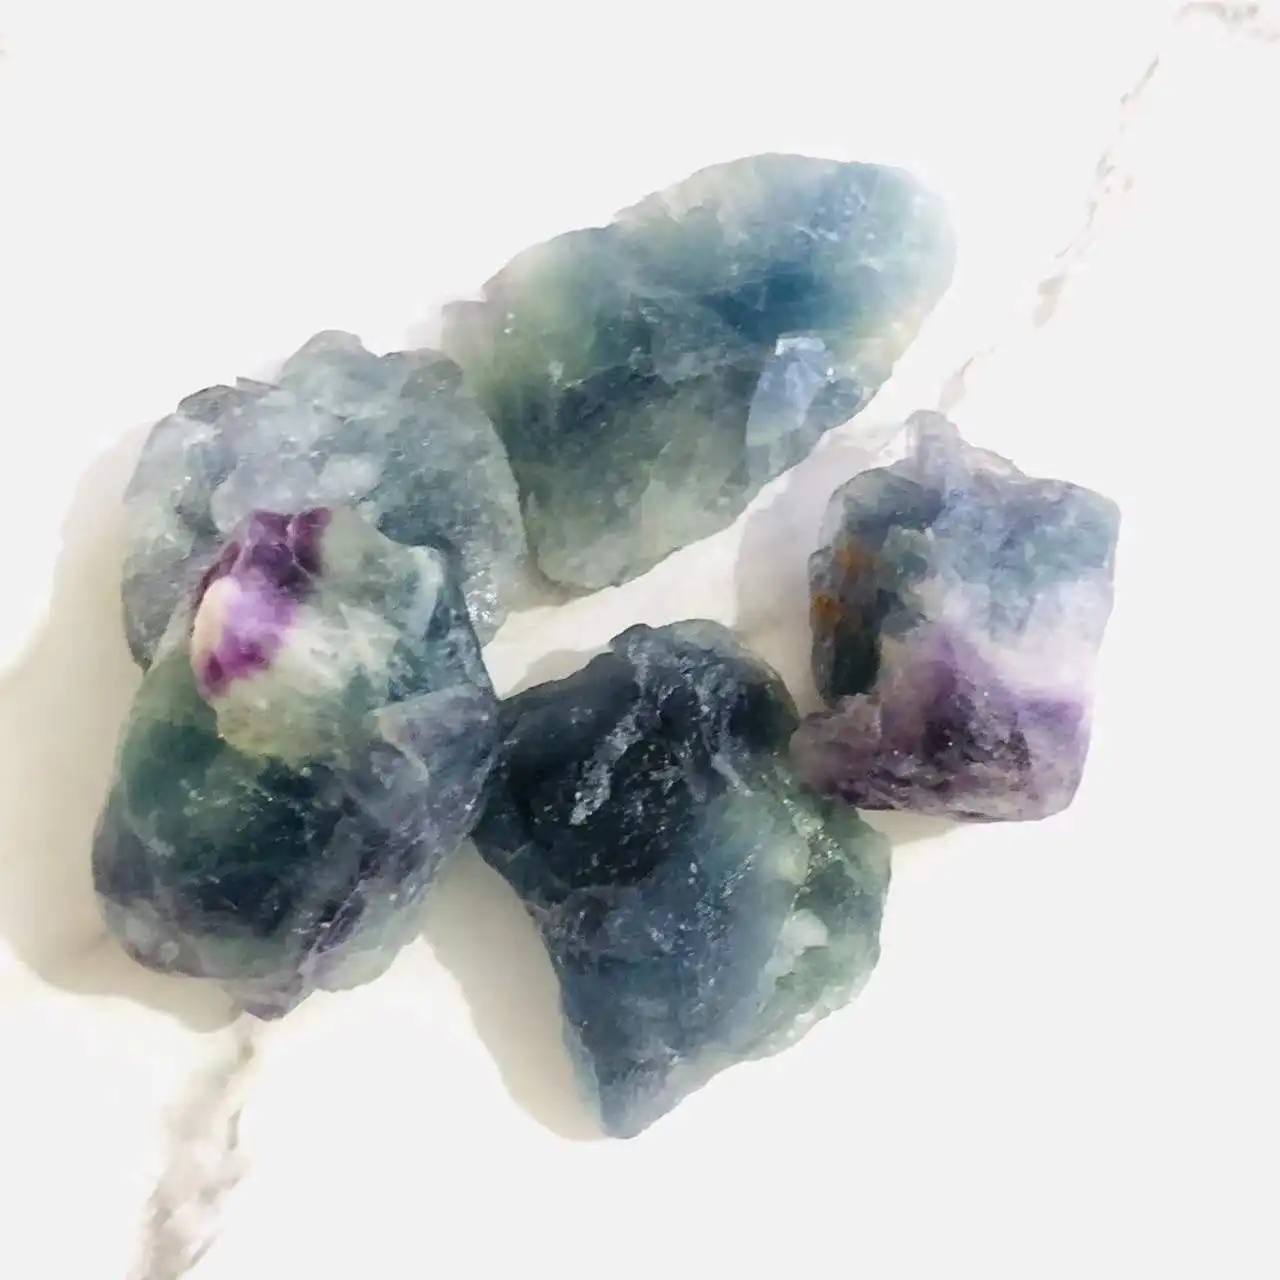 Venda por atacado de alta qualidade baixo preço de fluorite arco-íris natural flúrito cura pedras de cristal cru para fengshui